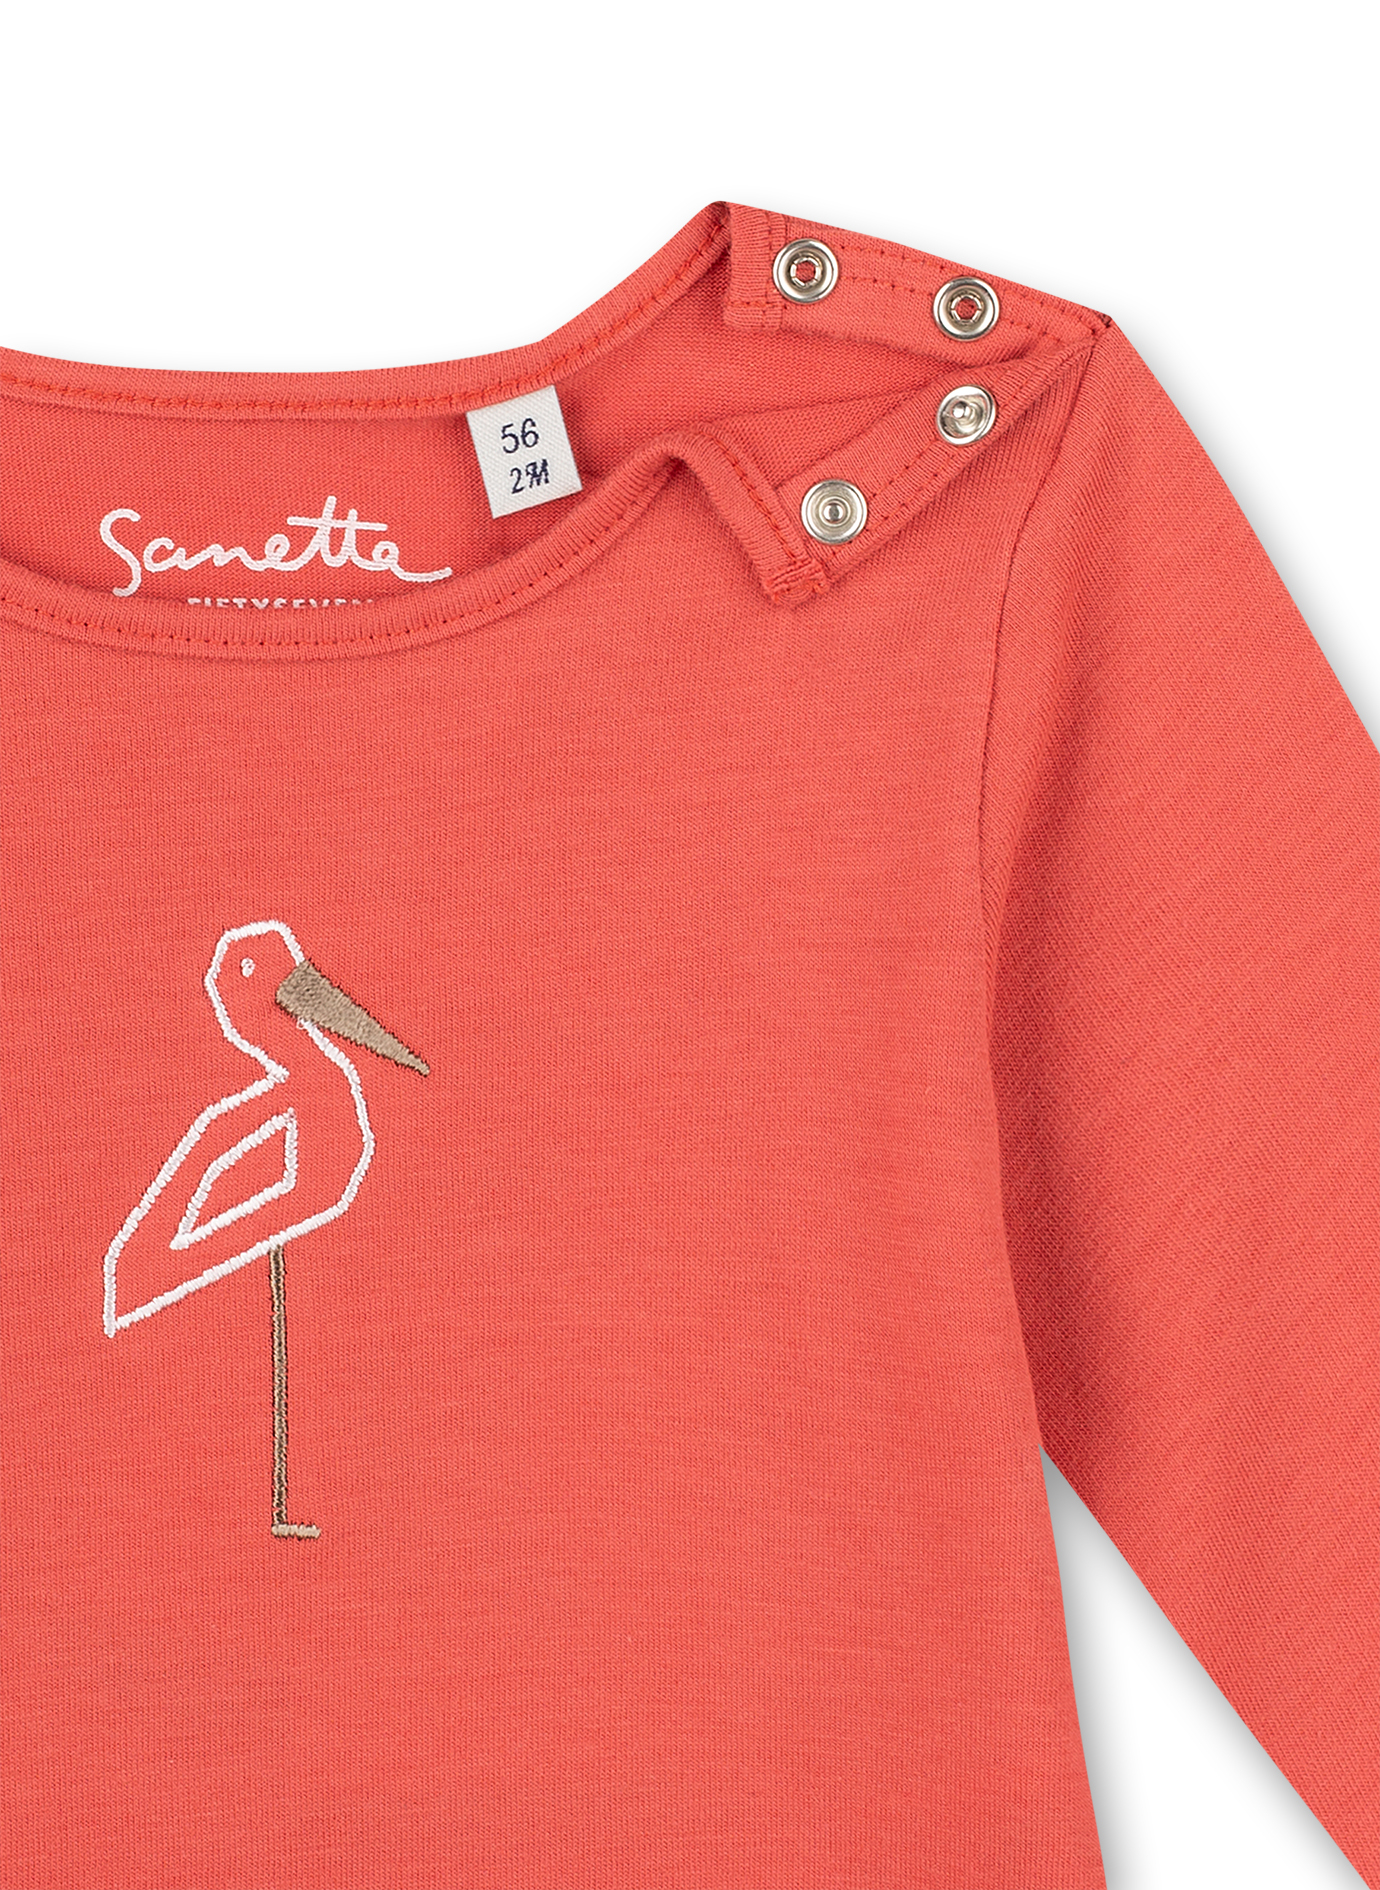 Mädchen-Shirt langarm Rot Family Stork